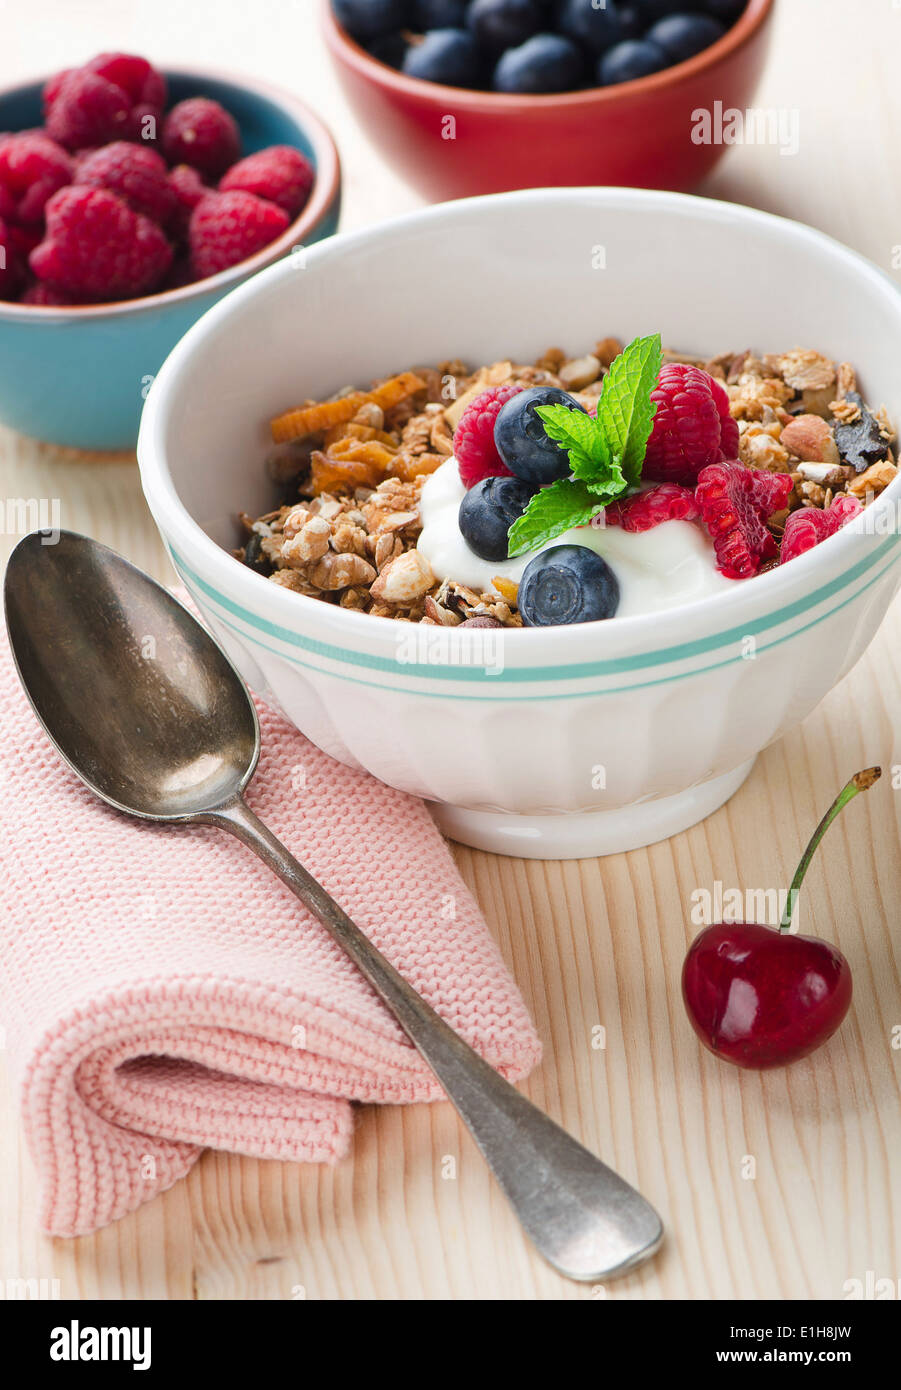 Bowl of muesli with fresh berries Stock Photo